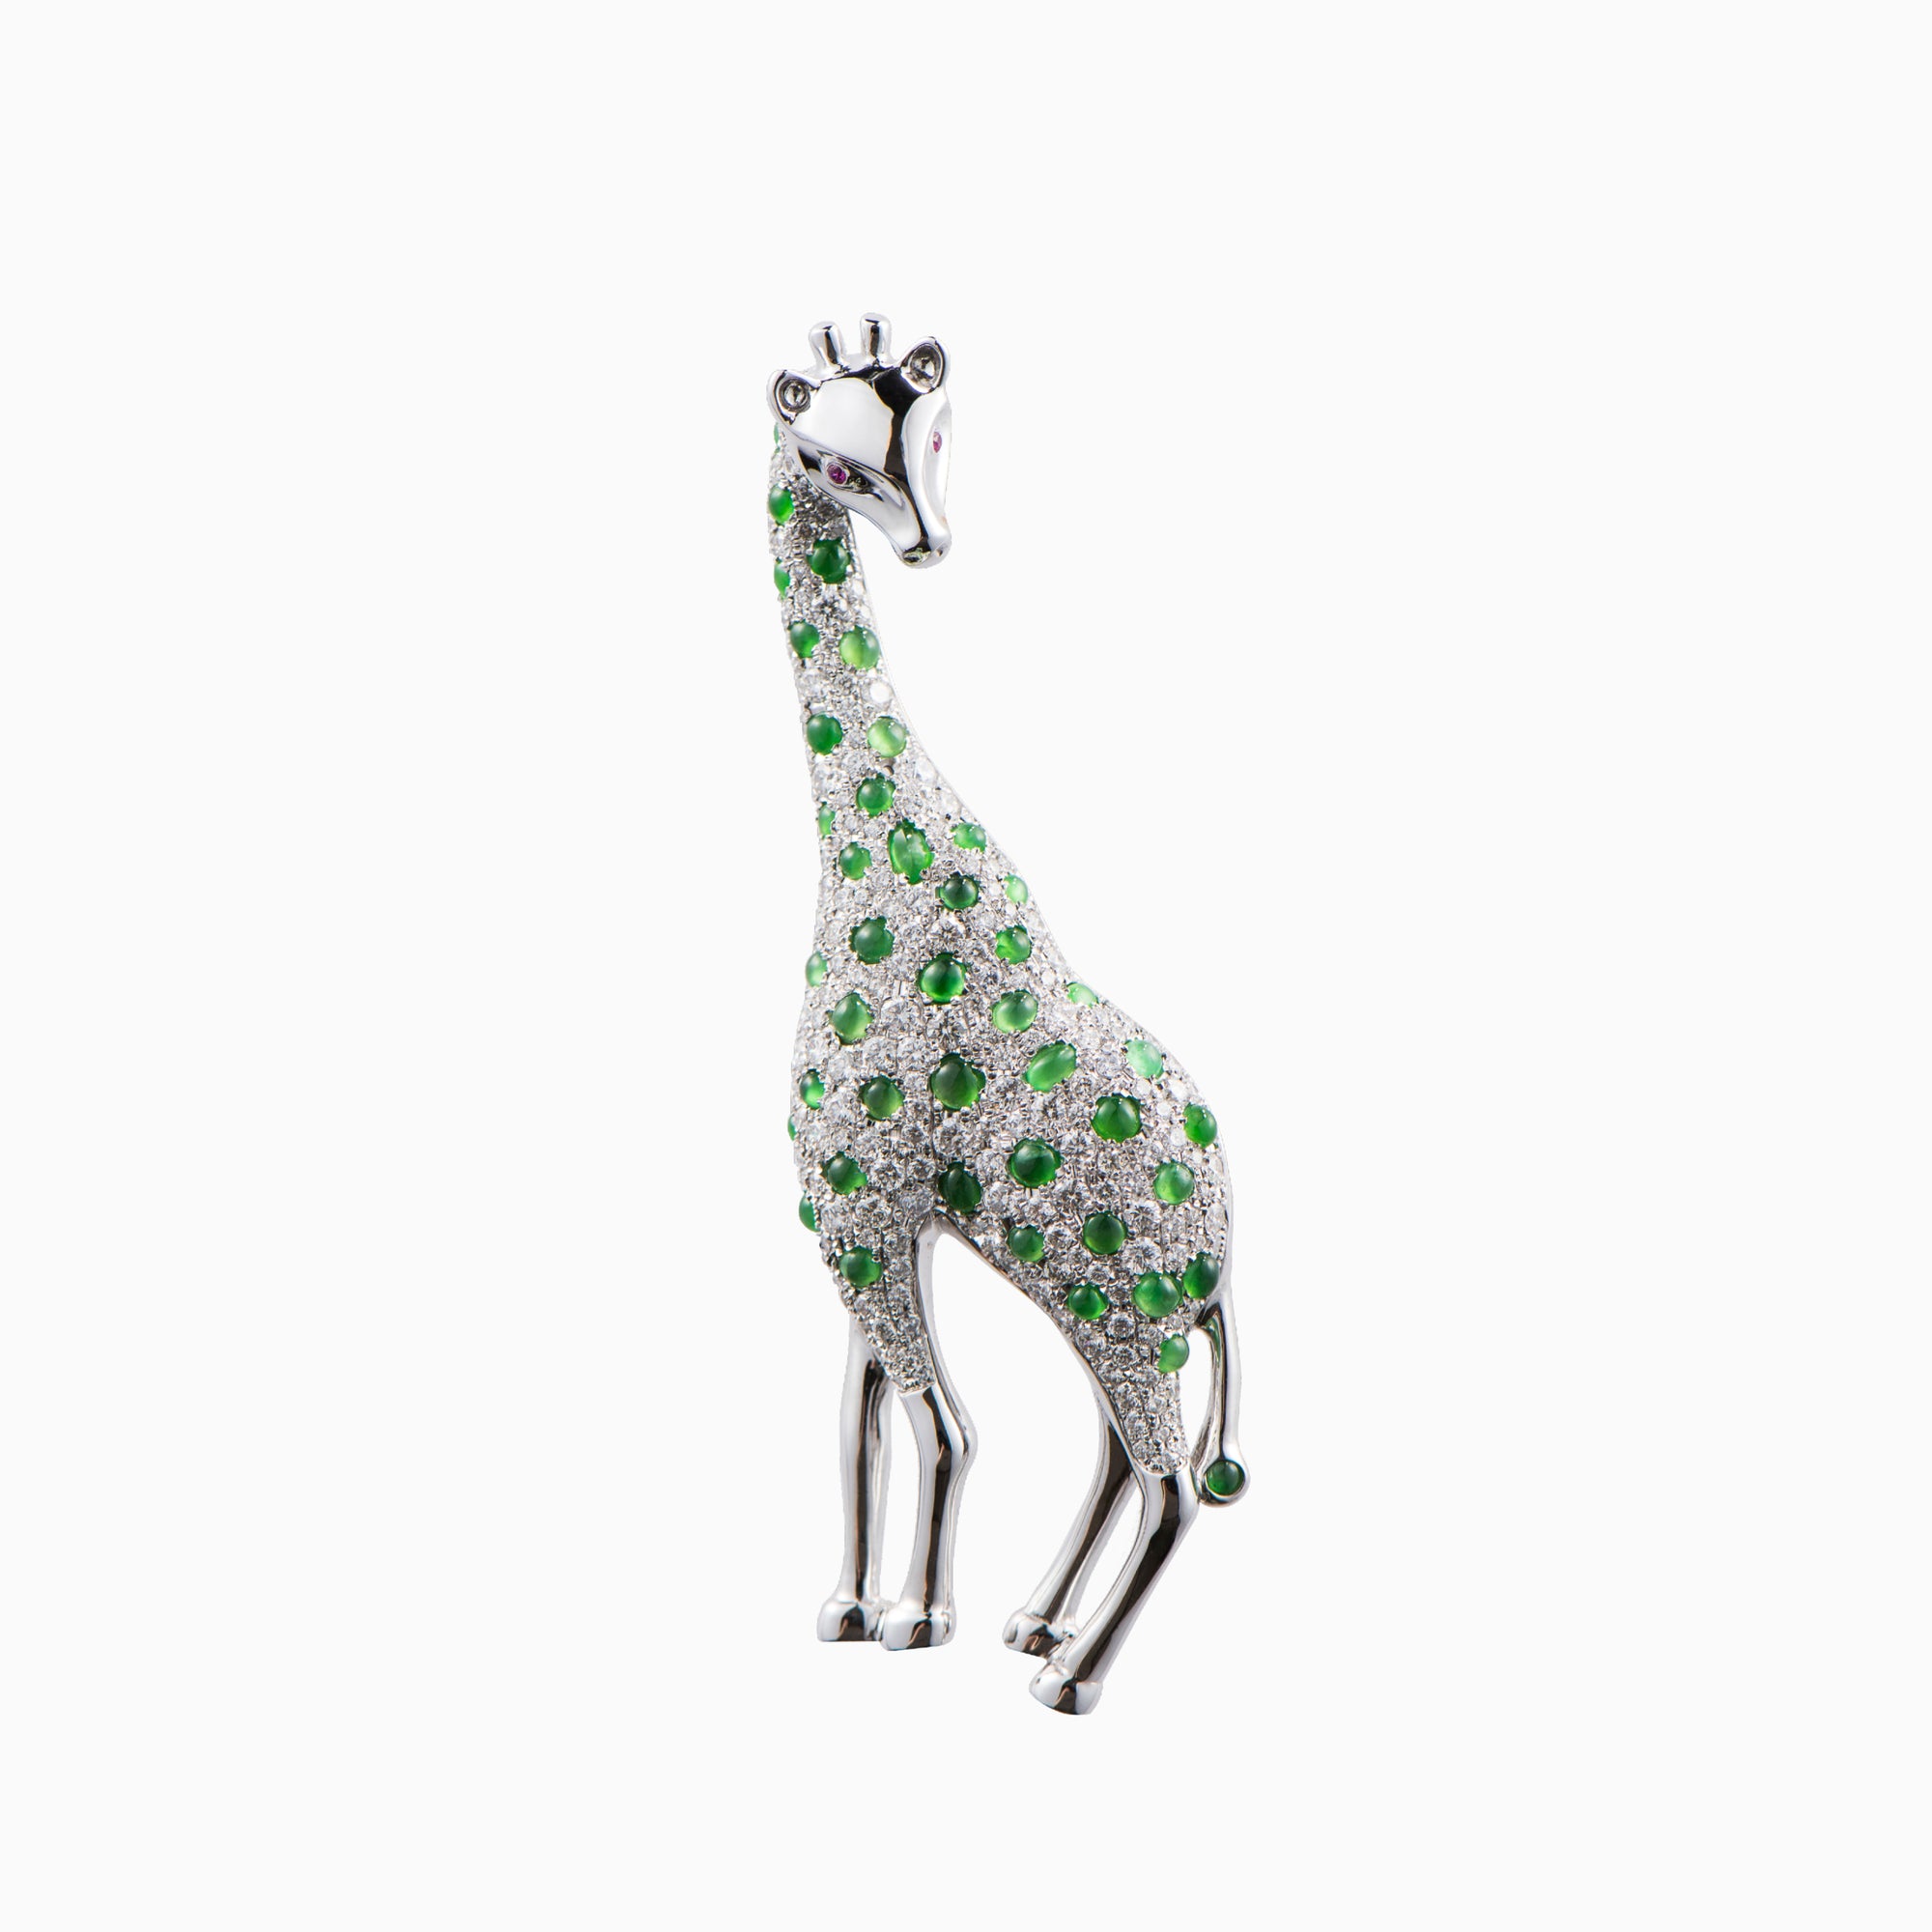 Jade Brooch named "Gazing Giraffe"